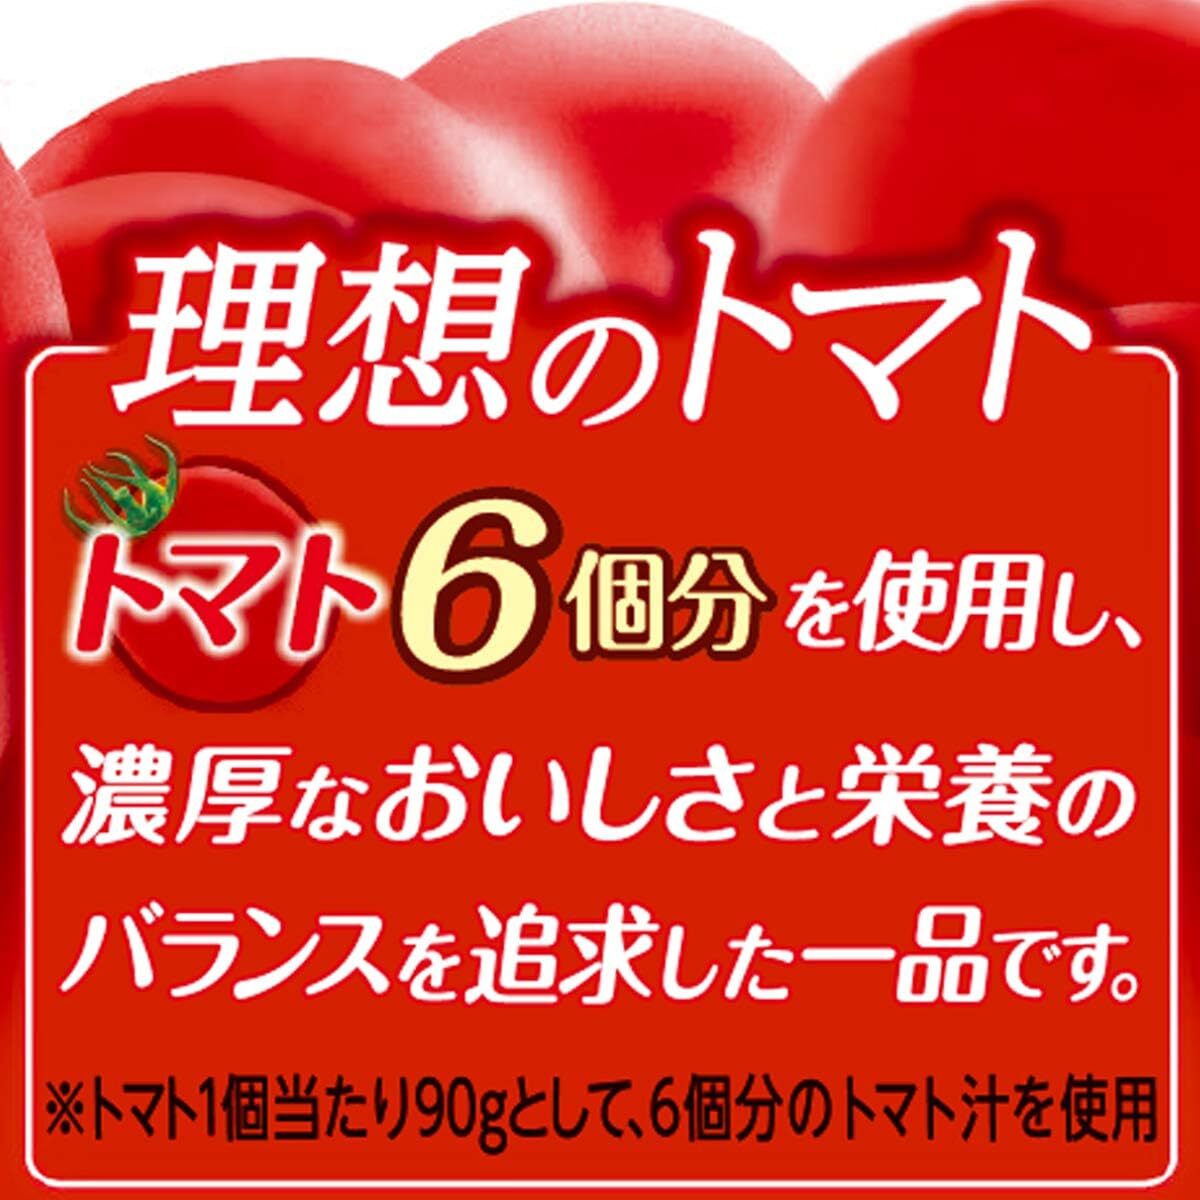 伊藤園 理想のトマト (缶) 190g×20本の画像1